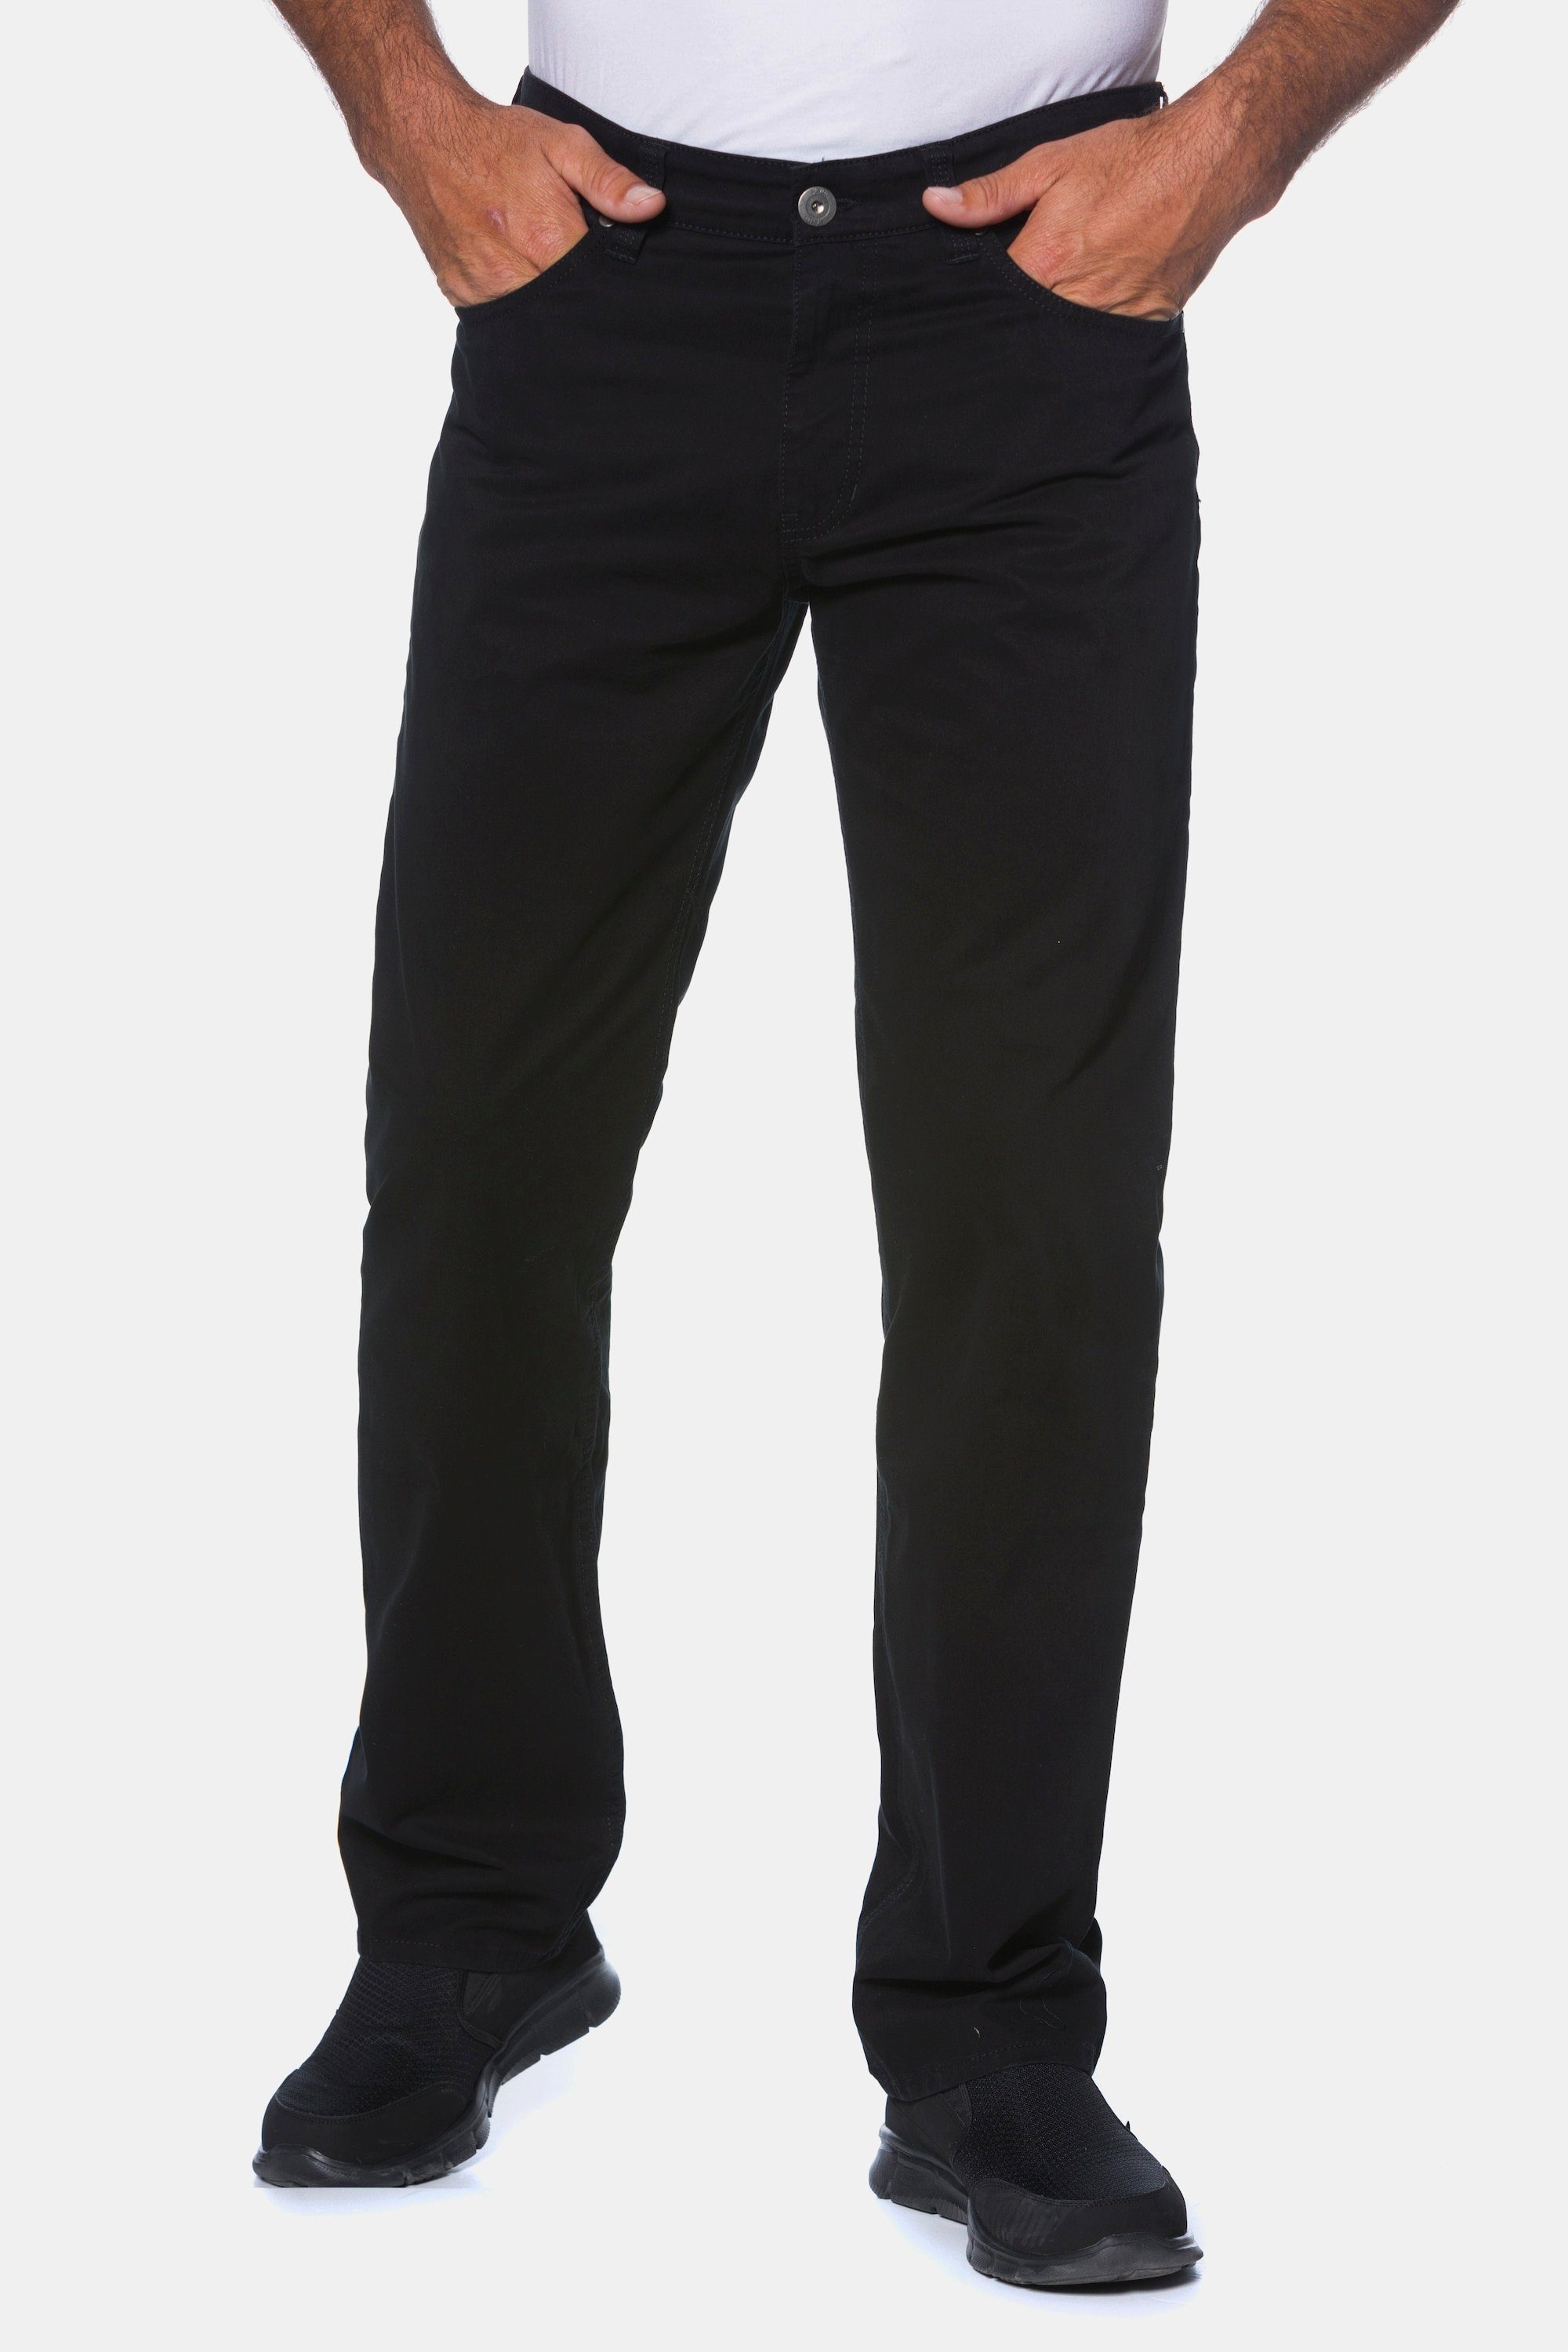 JP1880 5-Pocket-Jeans Twillhose Superblack-Färbung Komfortbund